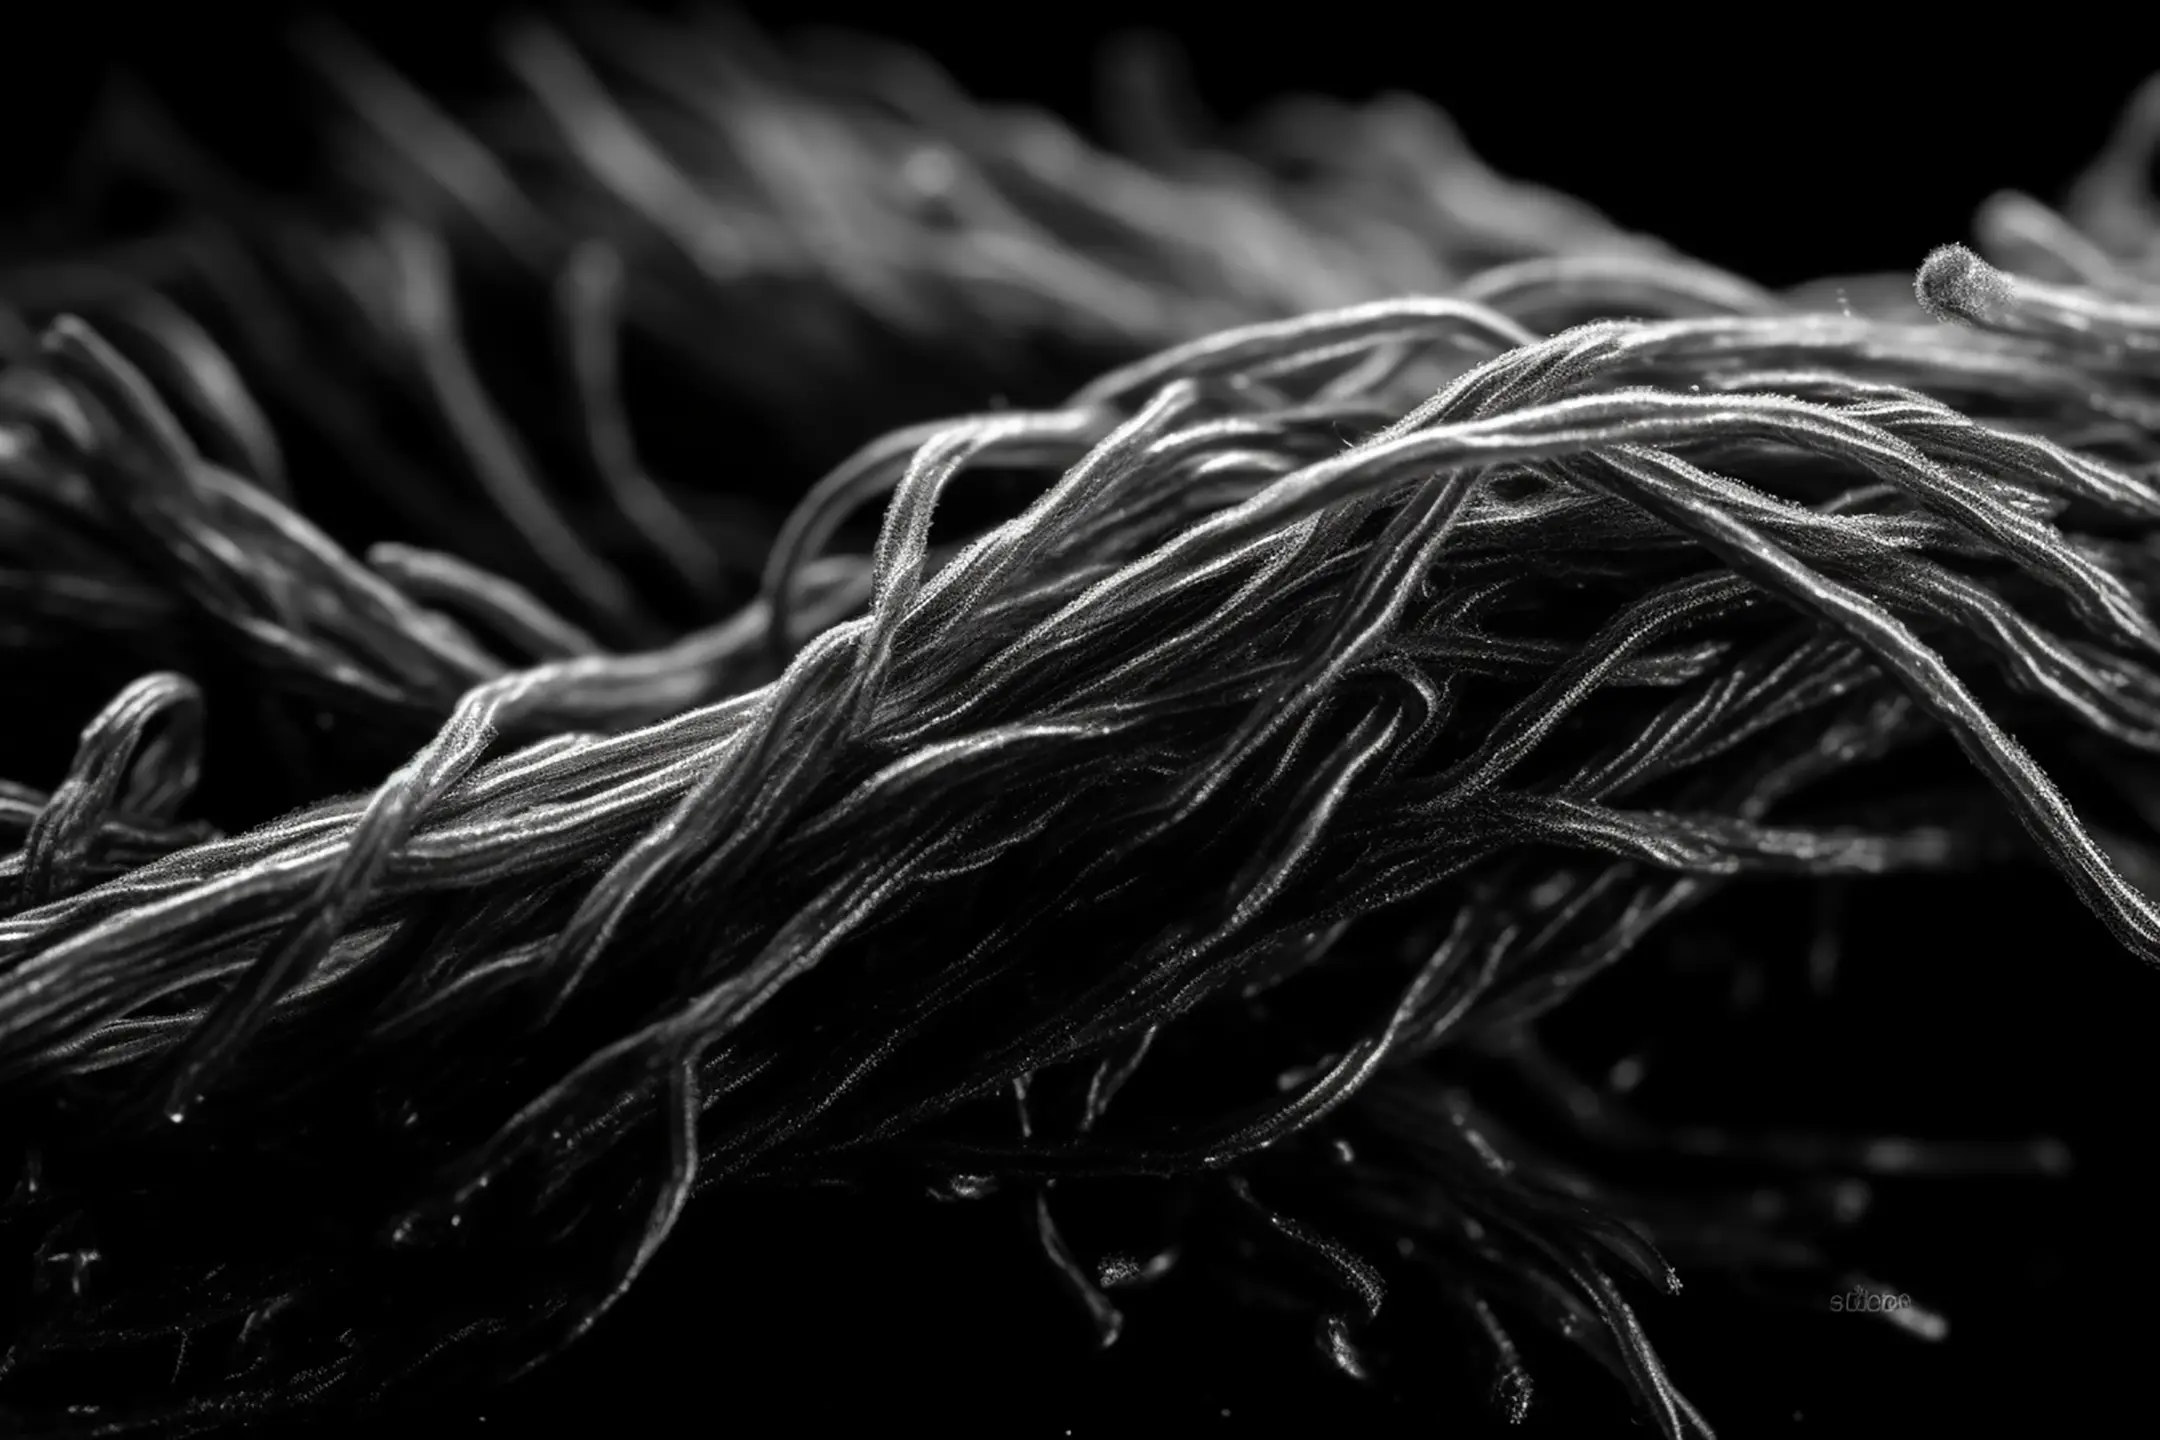 an image of an individual fibre close-up